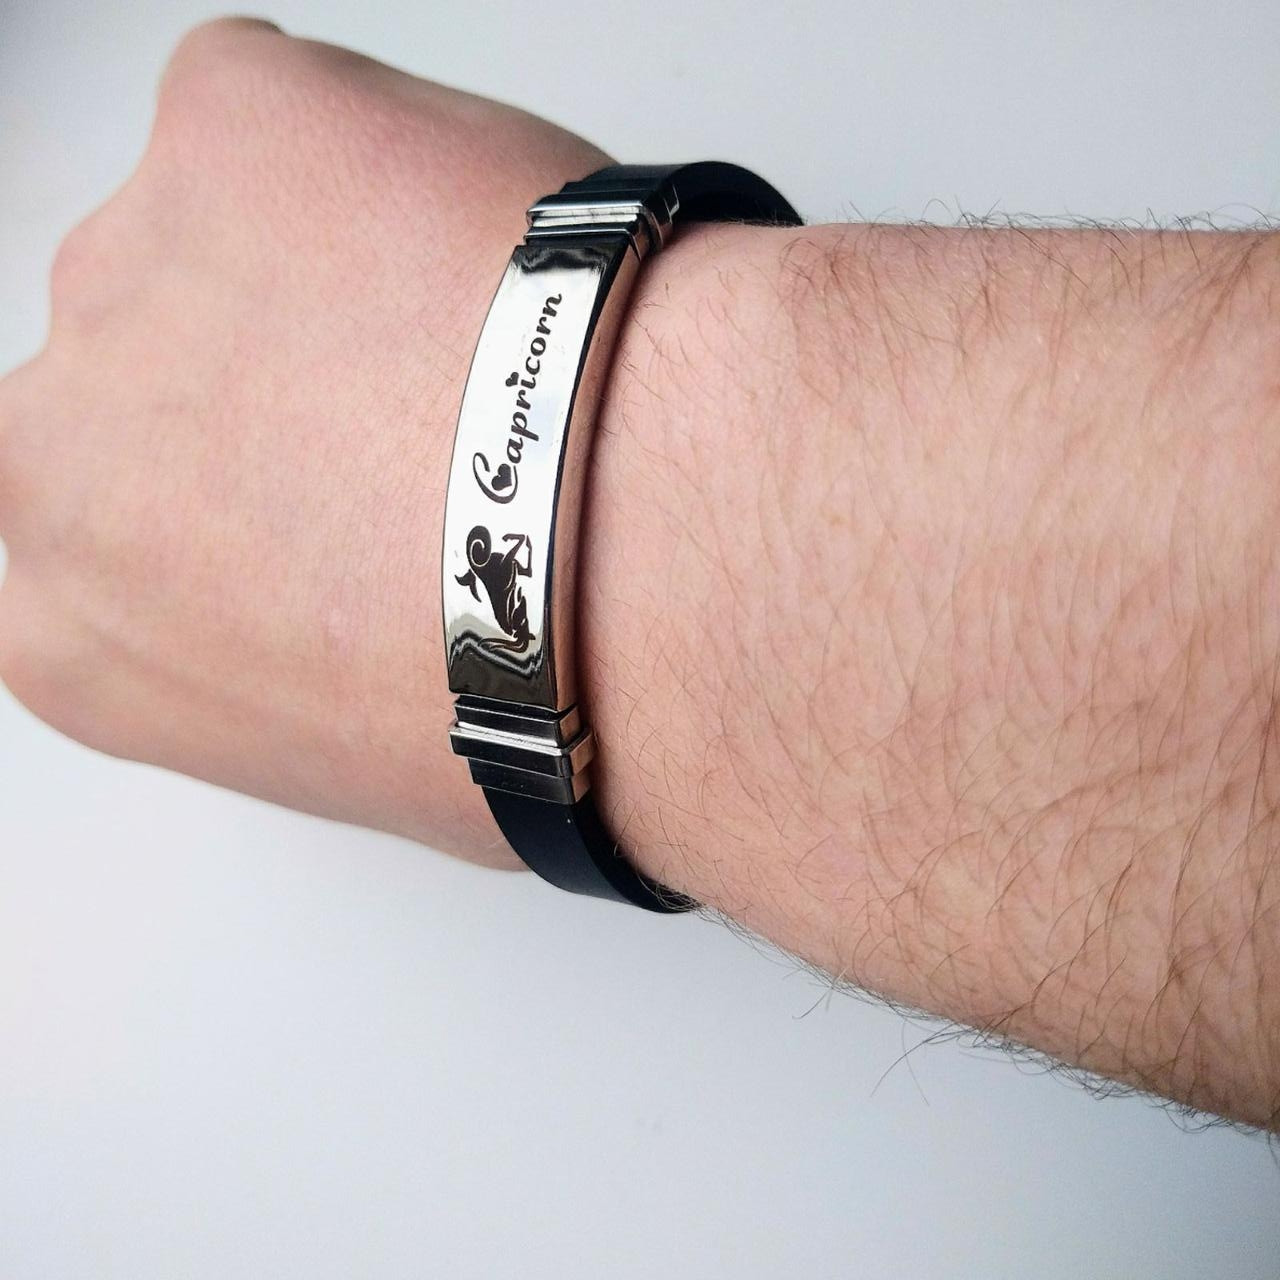 Сталевий браслет для знака зодіаку Козеріг на силіконовому ремінці - персональний пам'ятний подарунок хлопцю, дівчині